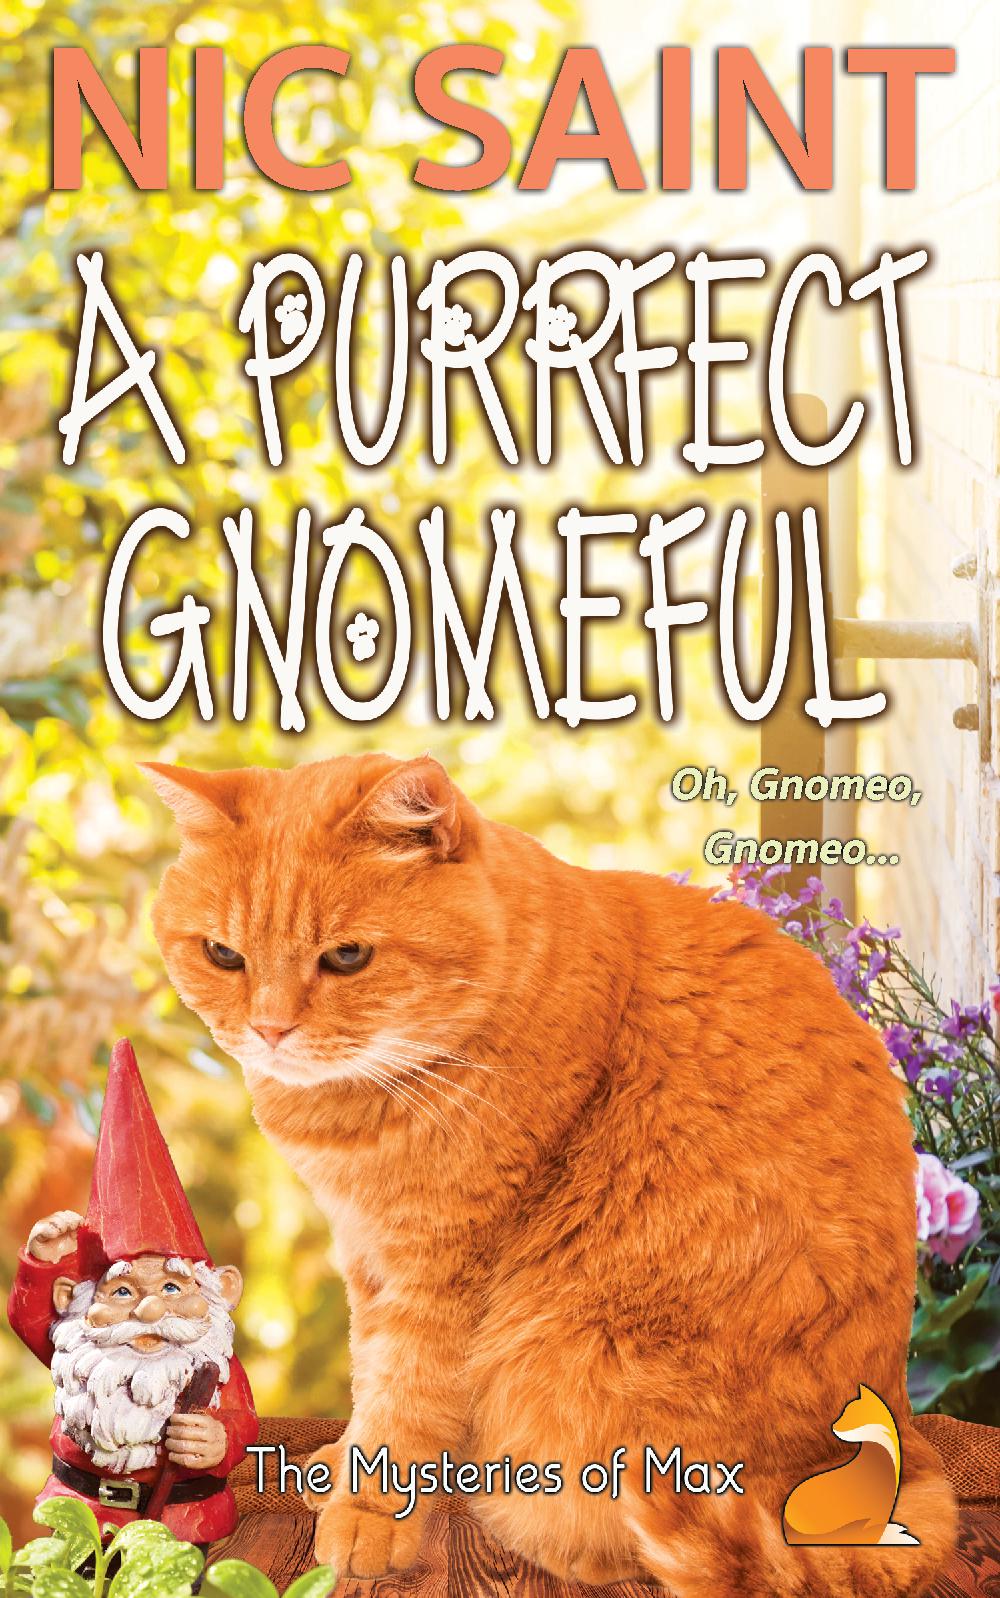 A Purrfect Gnomeful (Ebook)